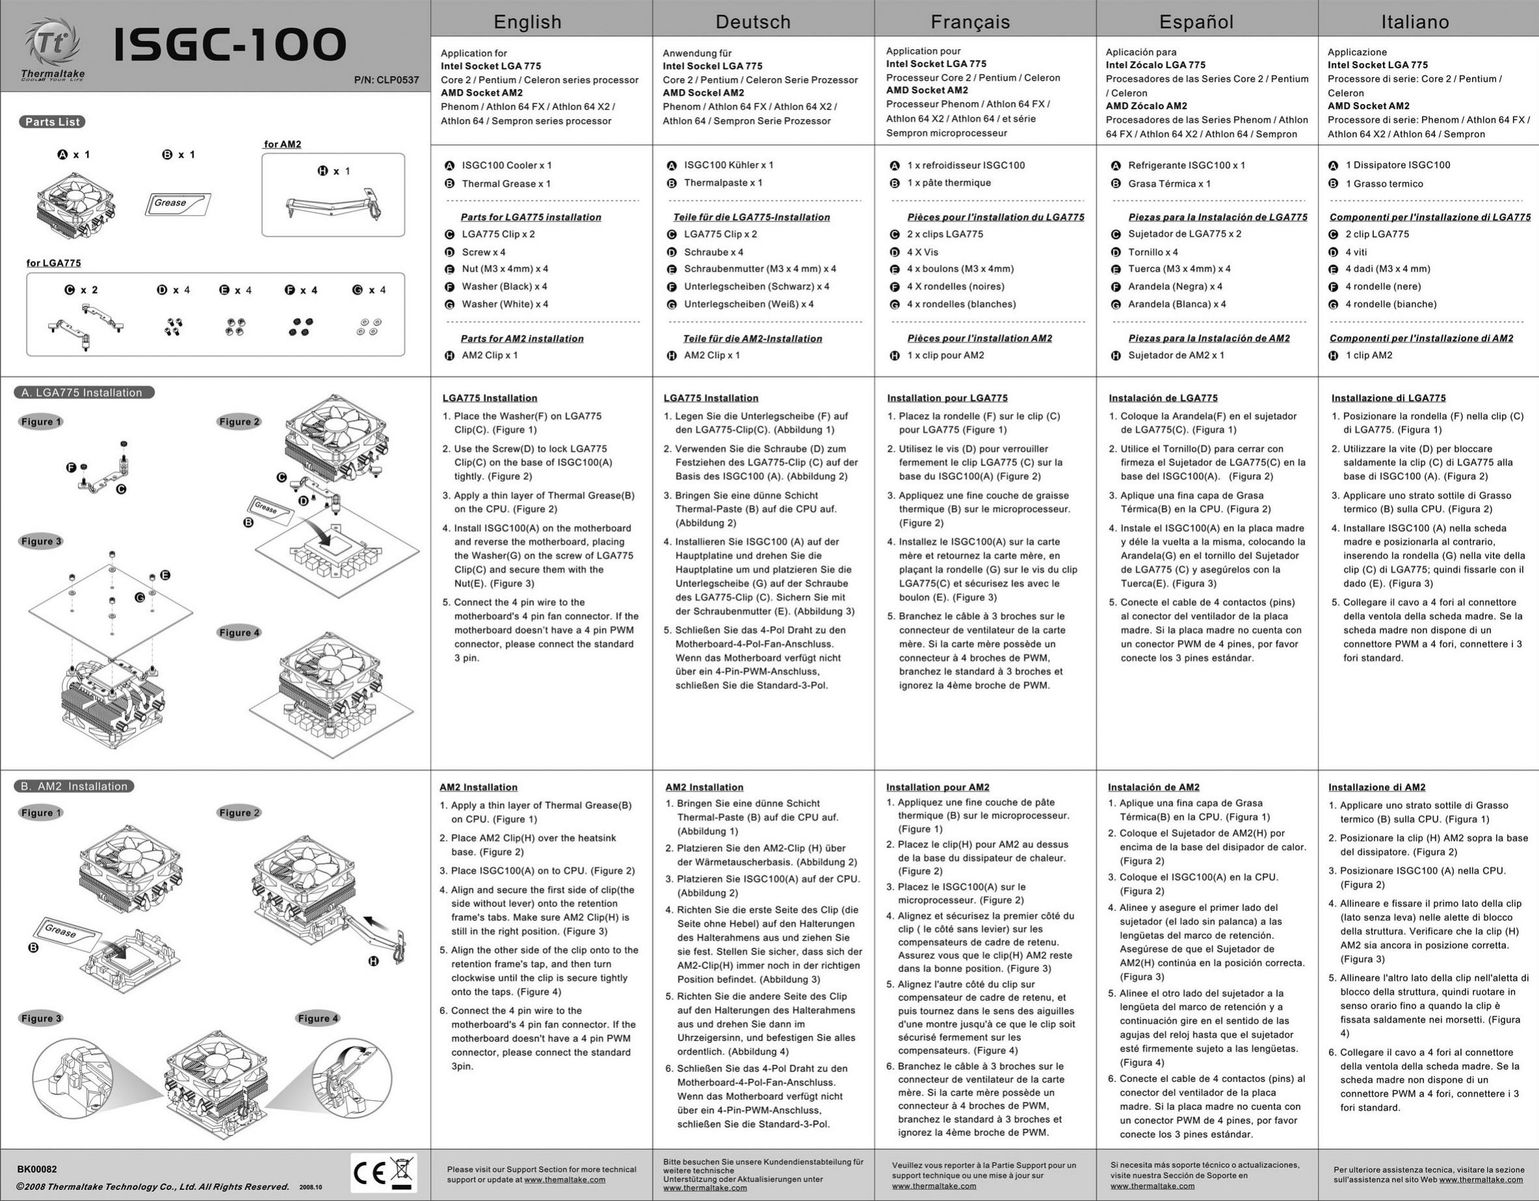 Thermaltake ISGC-100 Computer Hardware User Manual